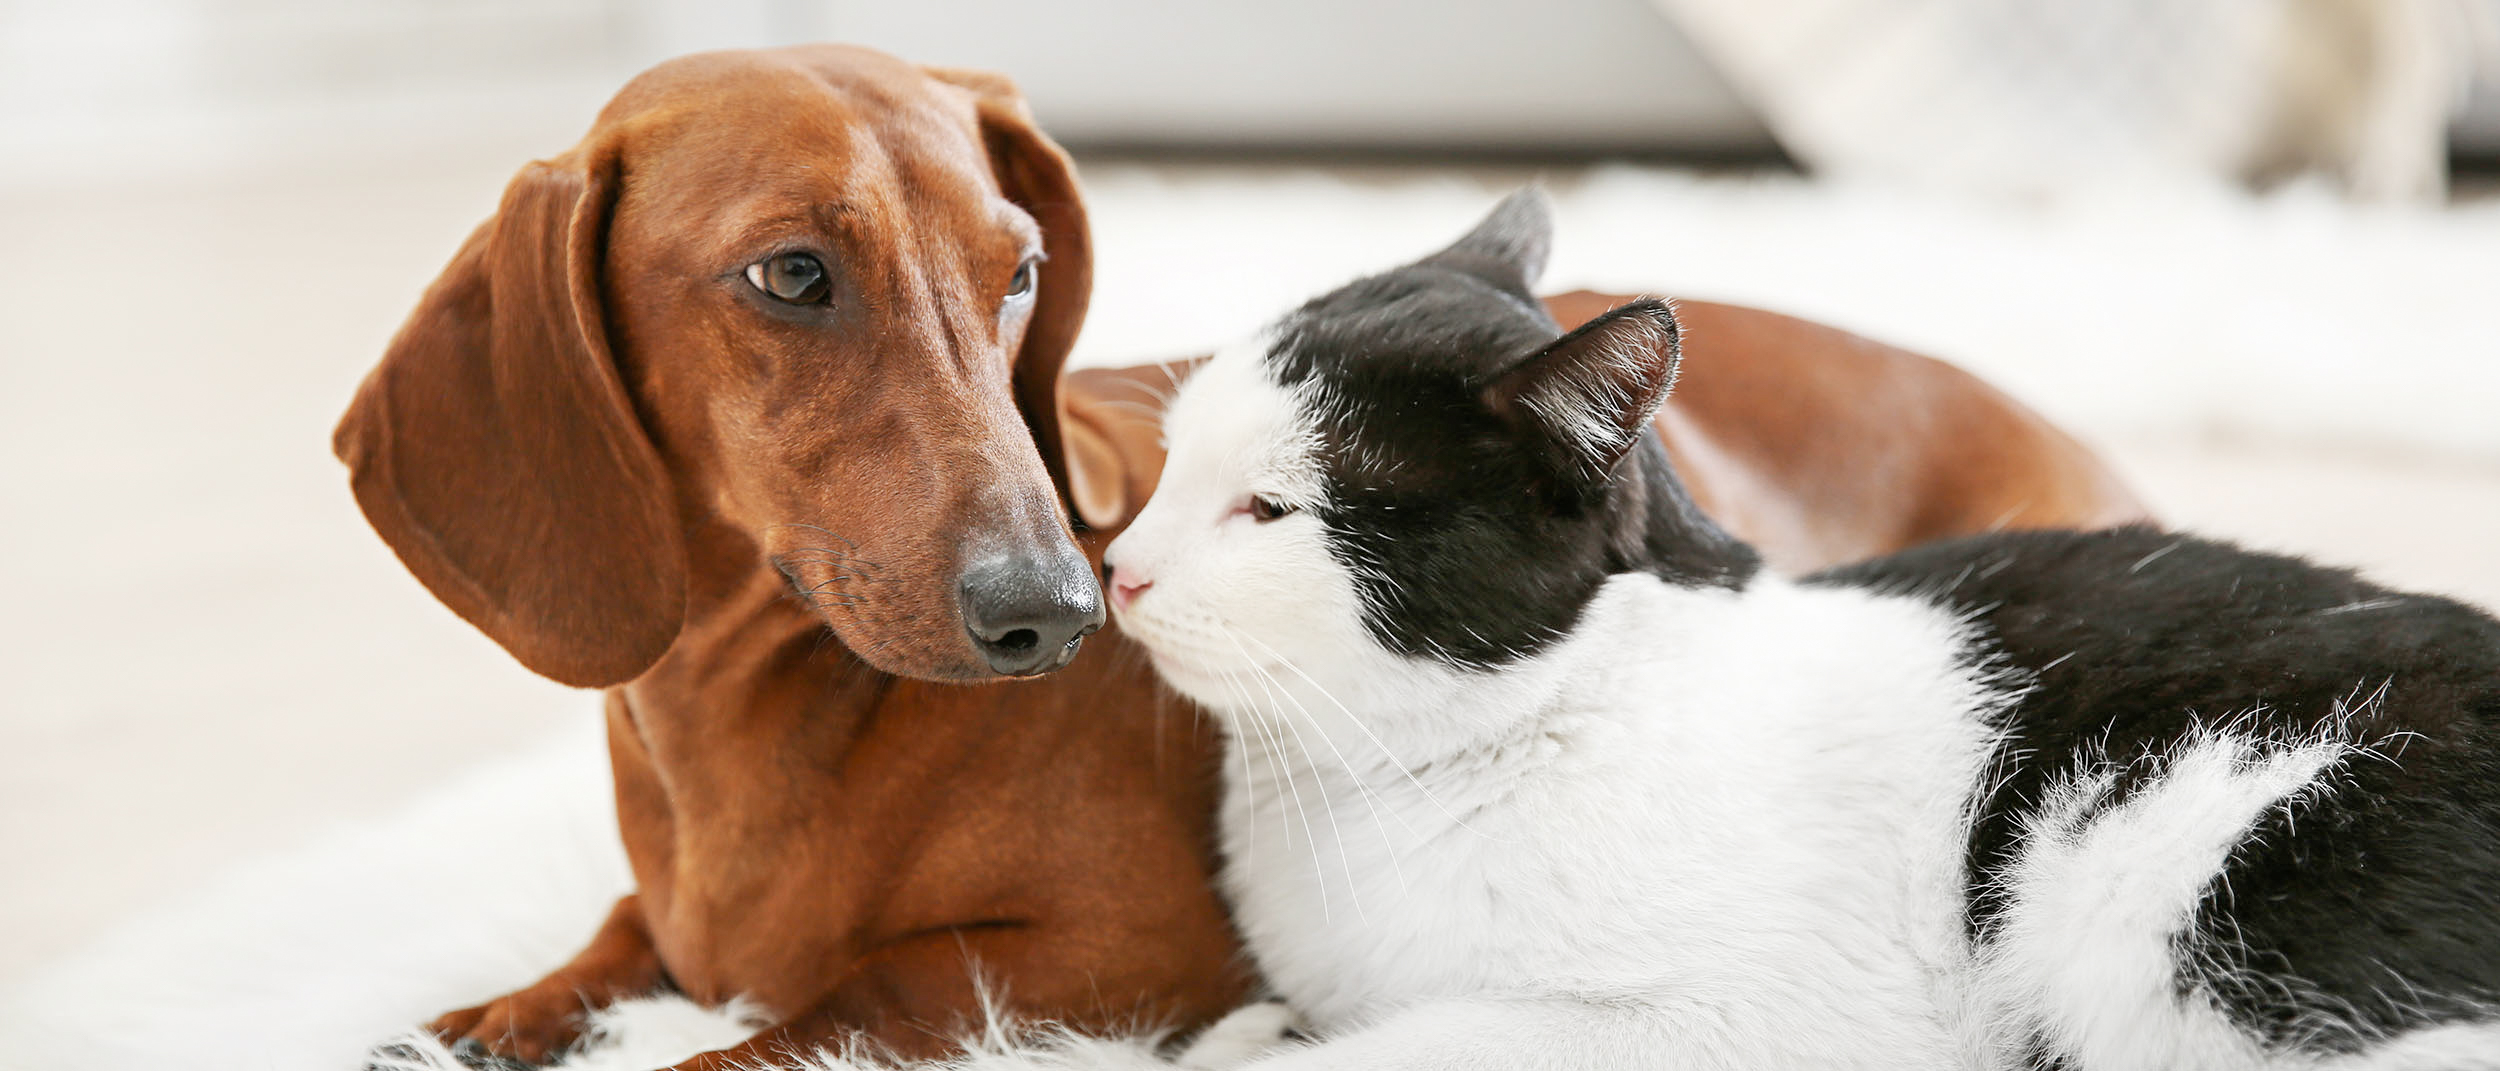 Как подружить кошку с собакой в квартире - как приучить кошку к собаке |  Royal Canin